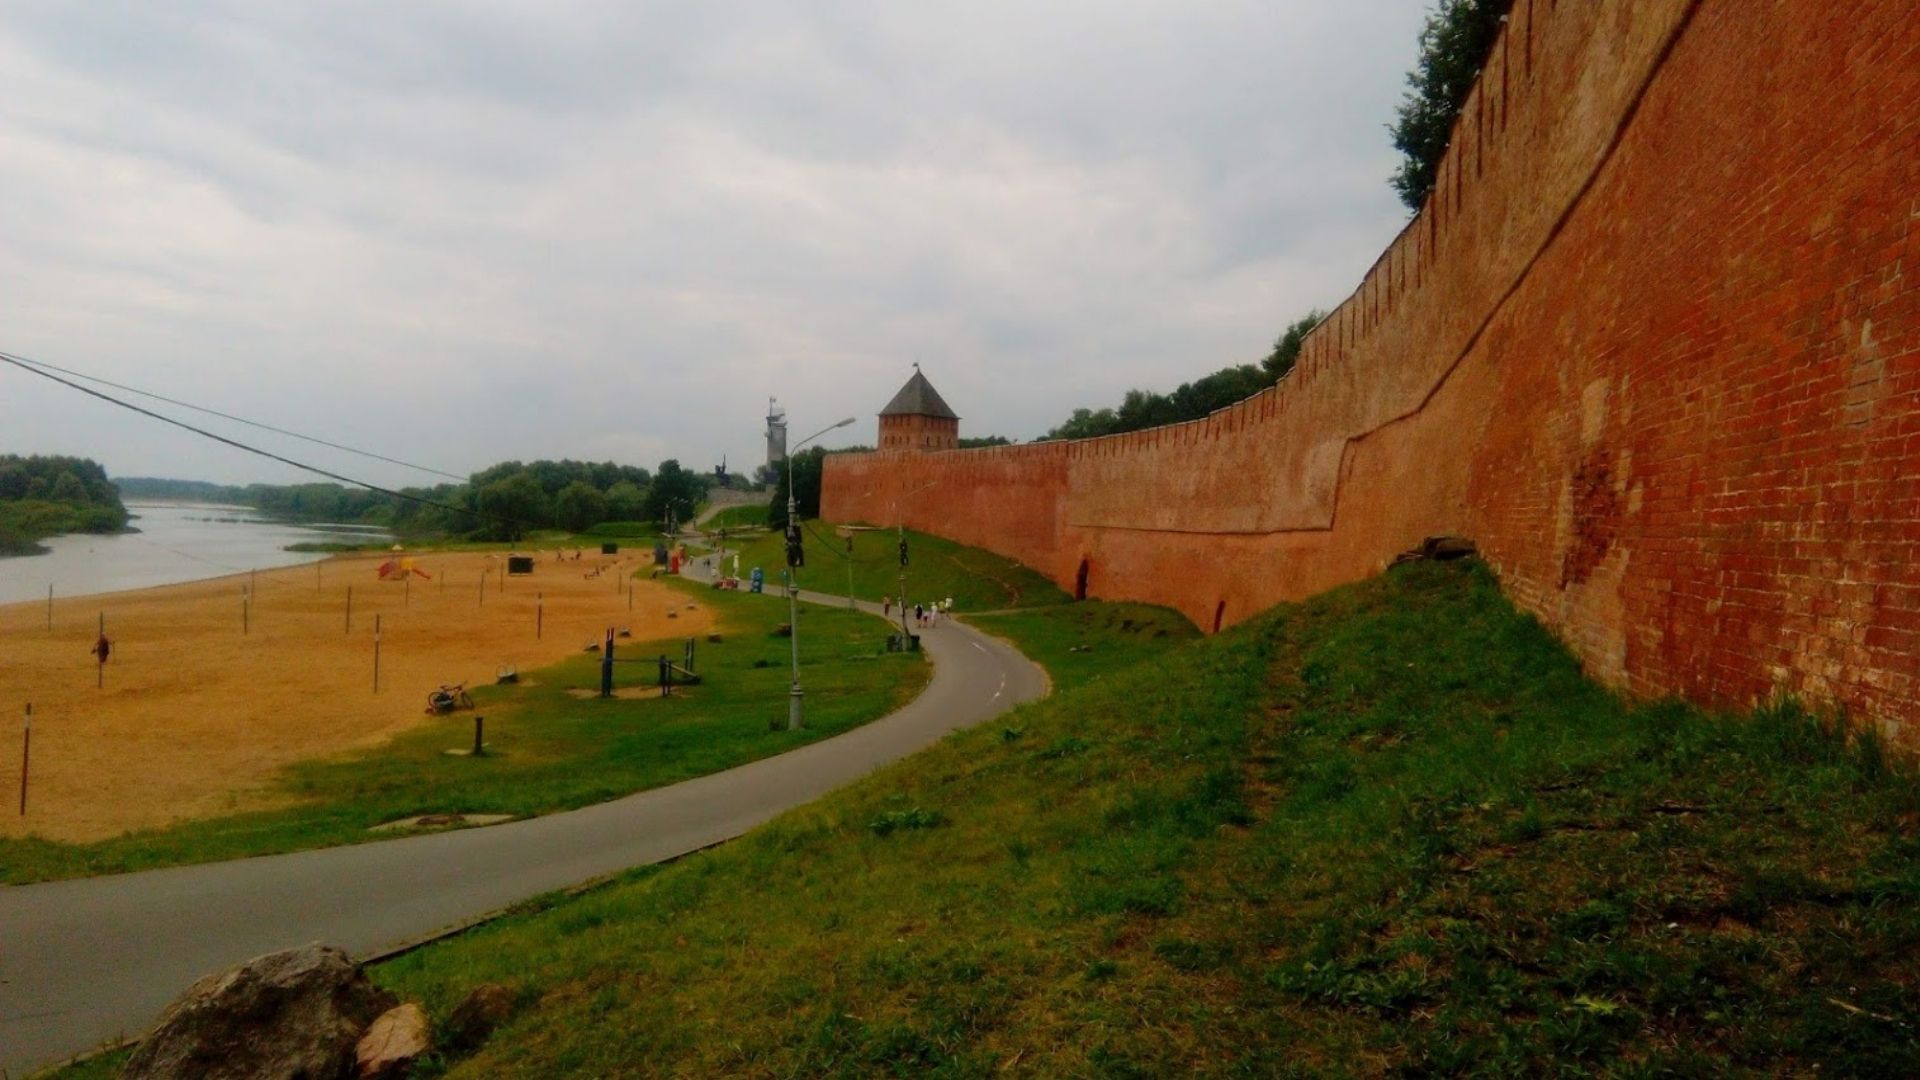 Великий Новгород вид на стену Кремля из статьи Великий Новгород-город,куда можно съездить из Питера на выходных